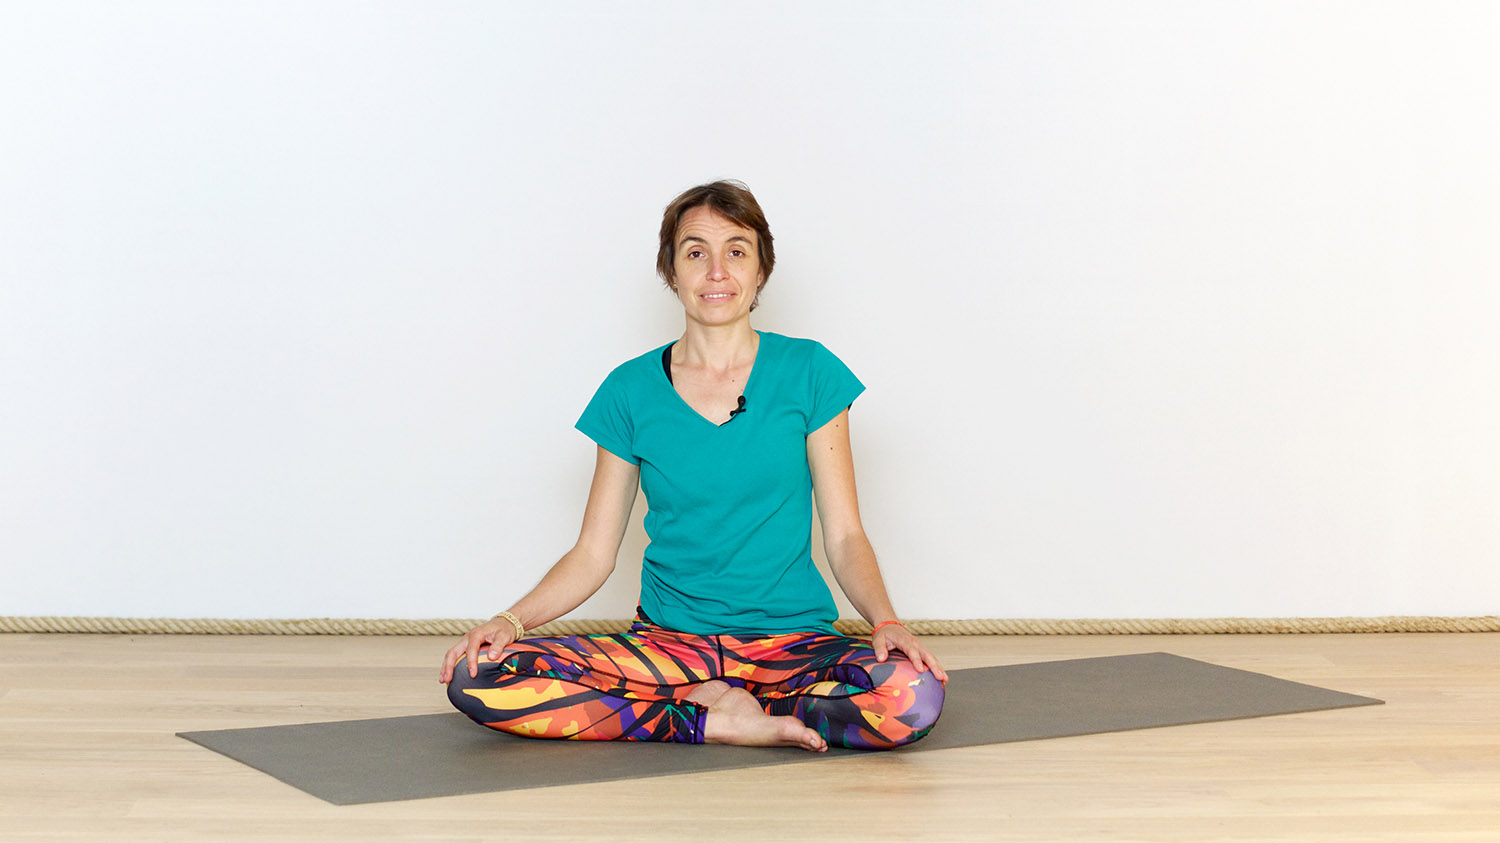 Introduction au Yoga pour enfants | Cours de yoga en ligne avec Charlotte Pégurier | Présentations, Yoga enfants